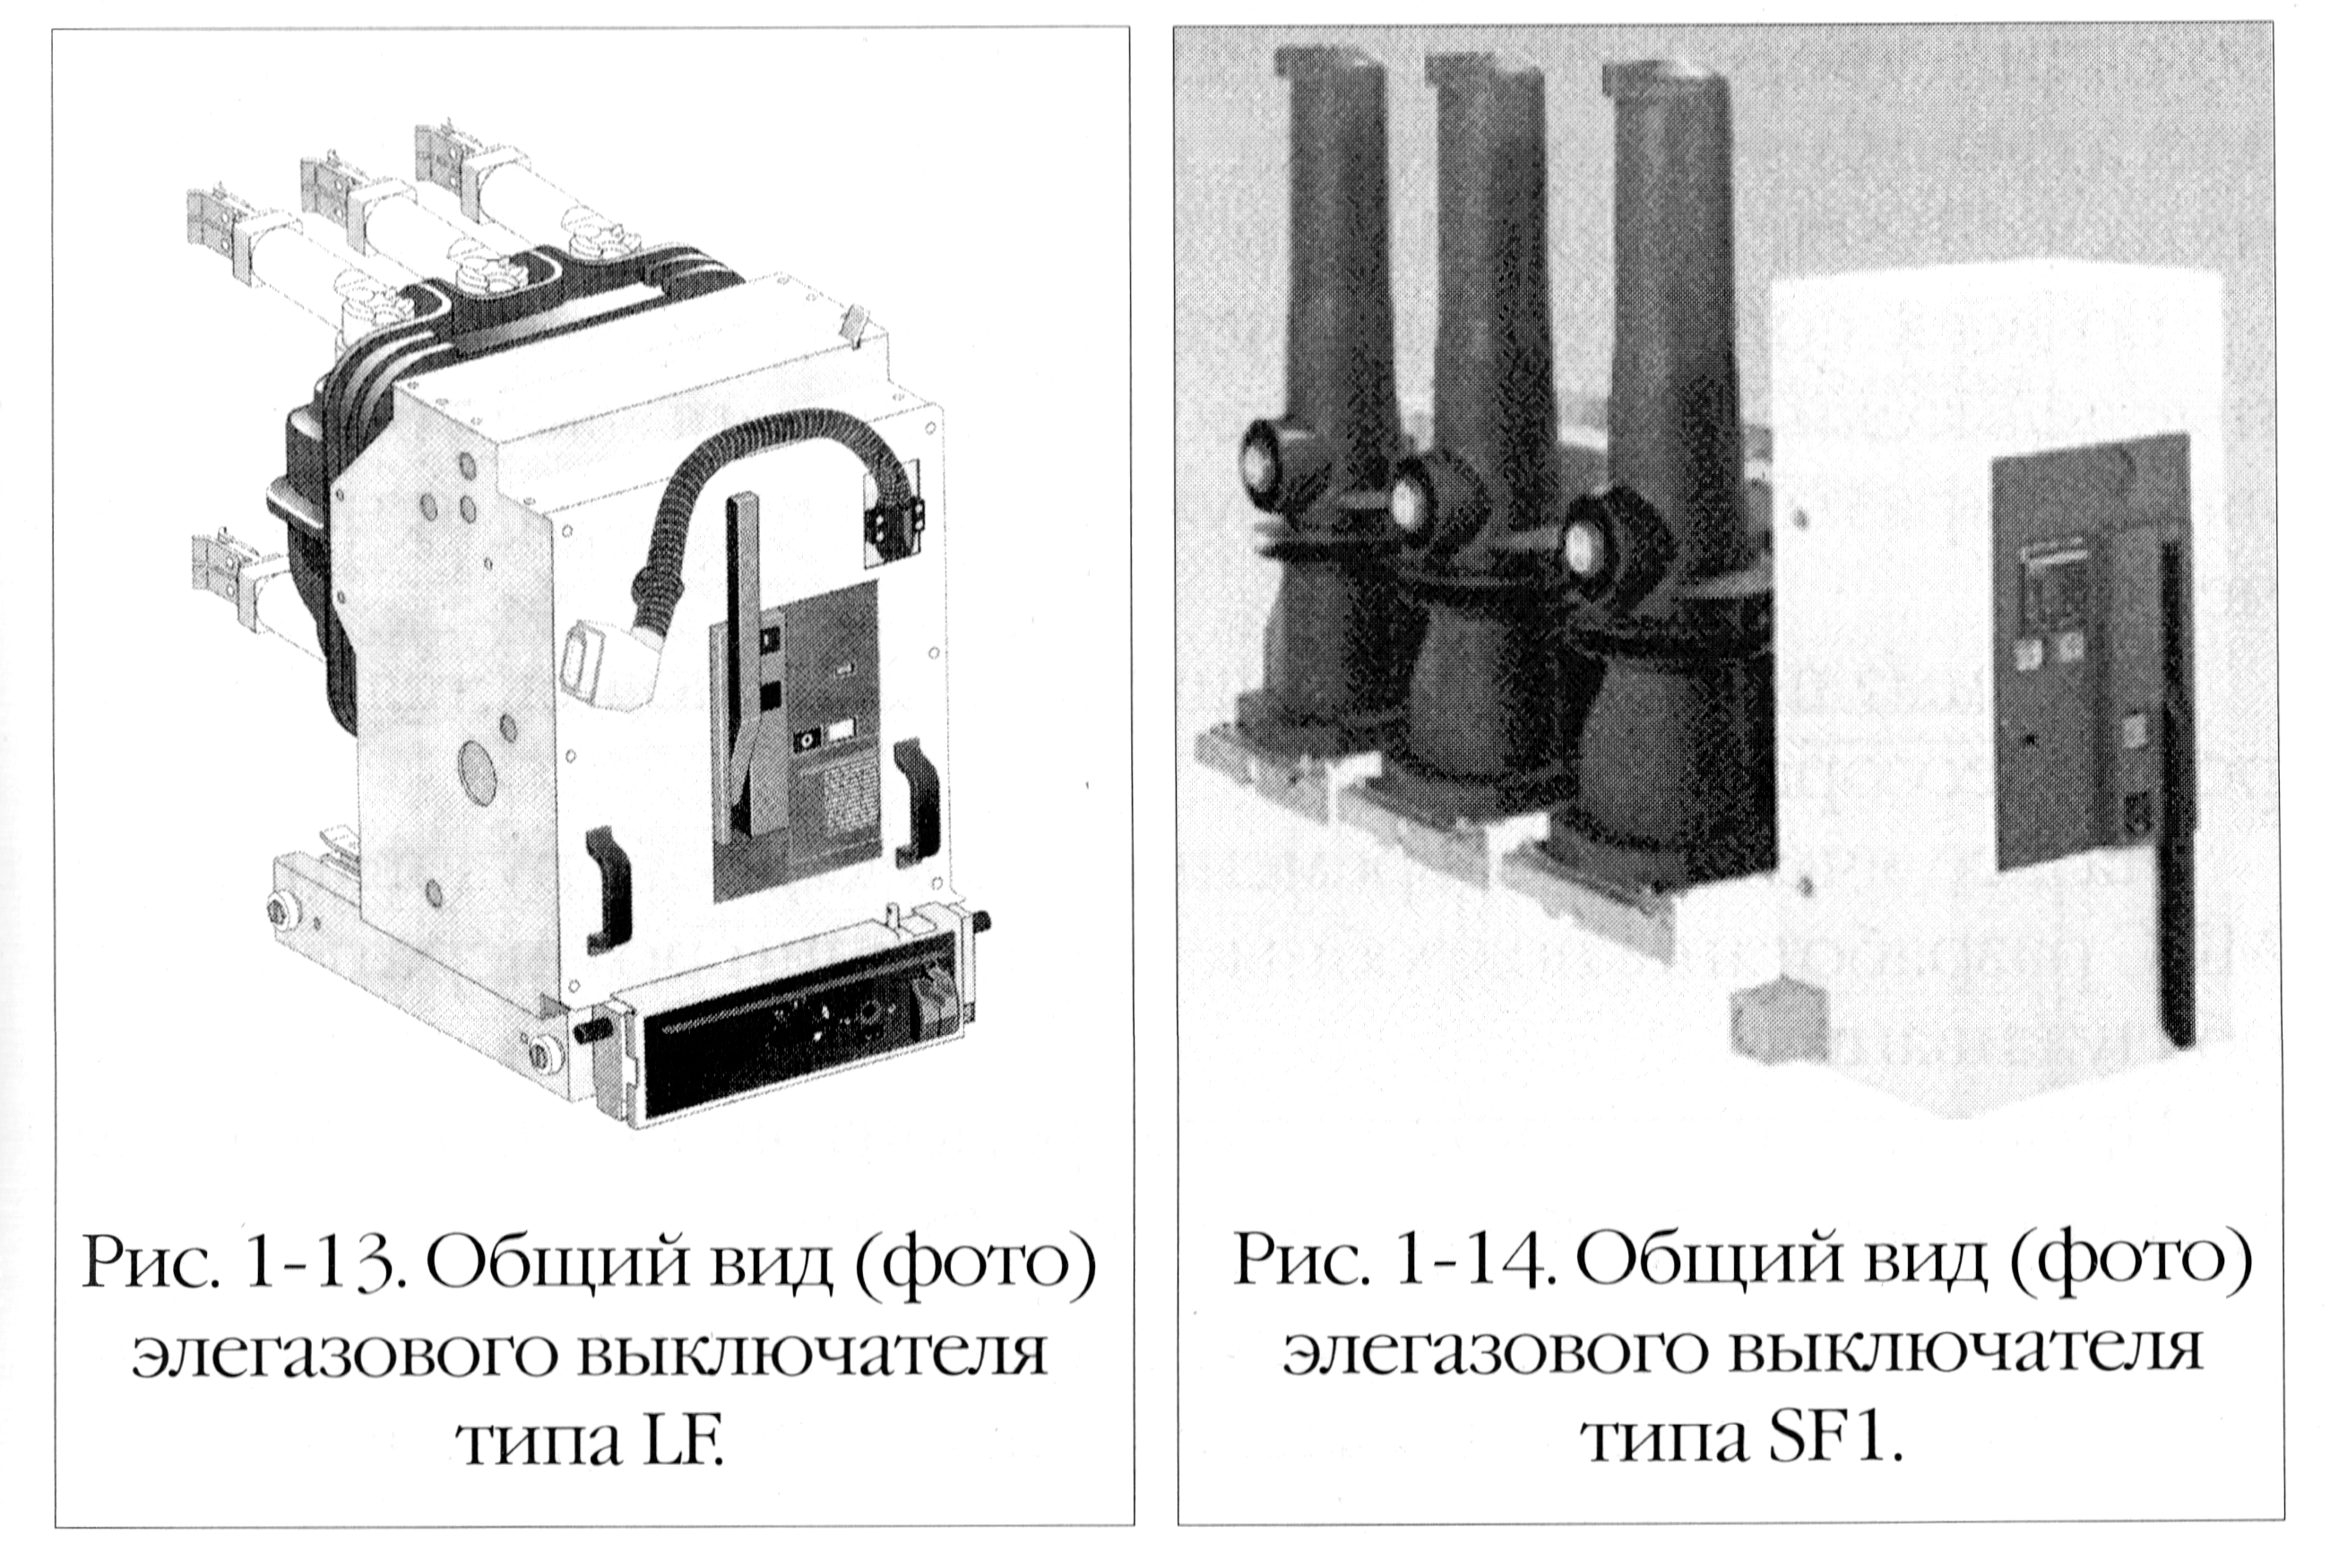 Рис. 1-13/14. Общий вид элегазовых выключателей LF и SF1.